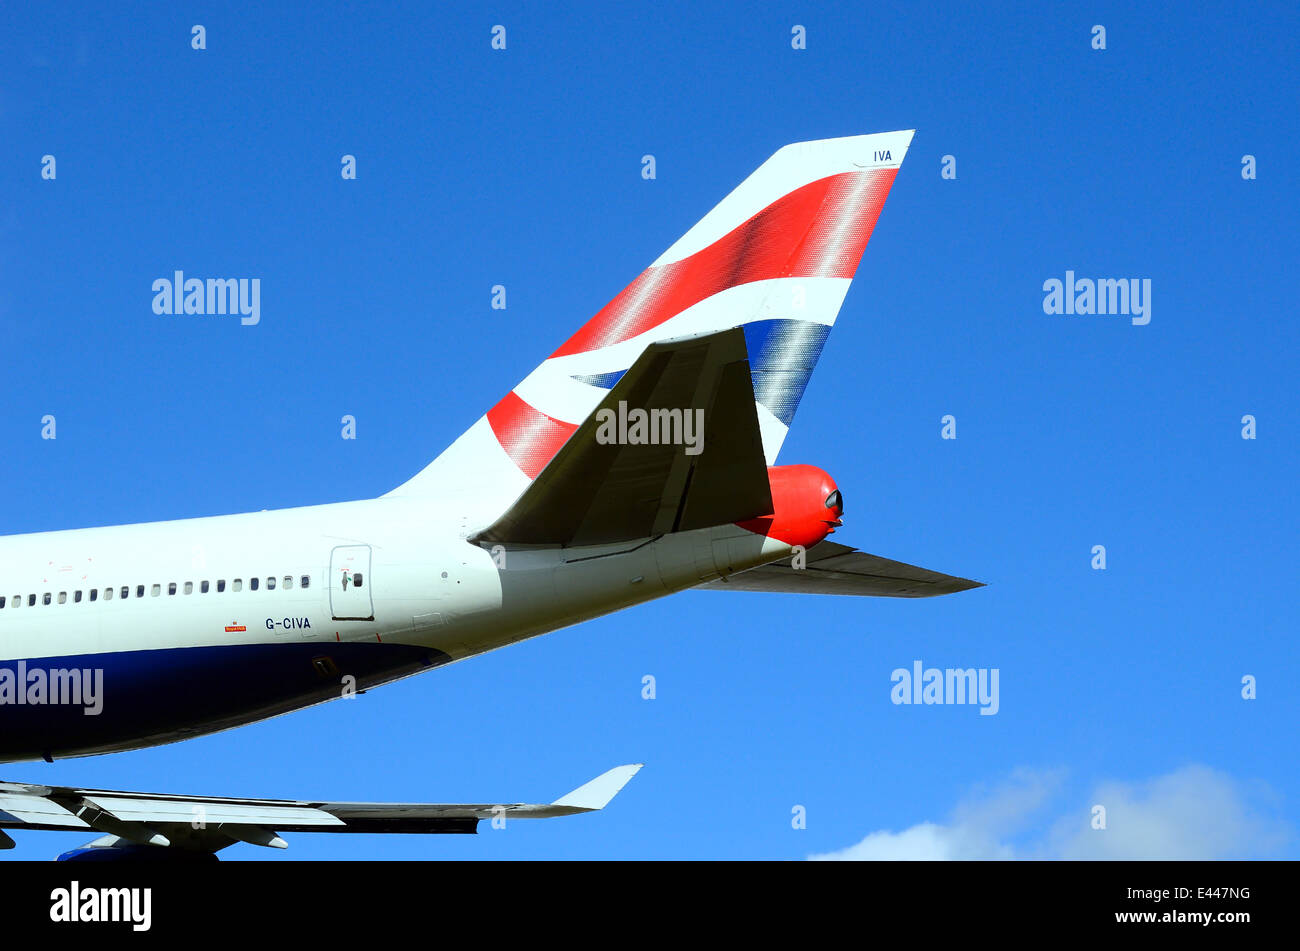 Tailplane of British Airways Jumbo jet Stock Photo